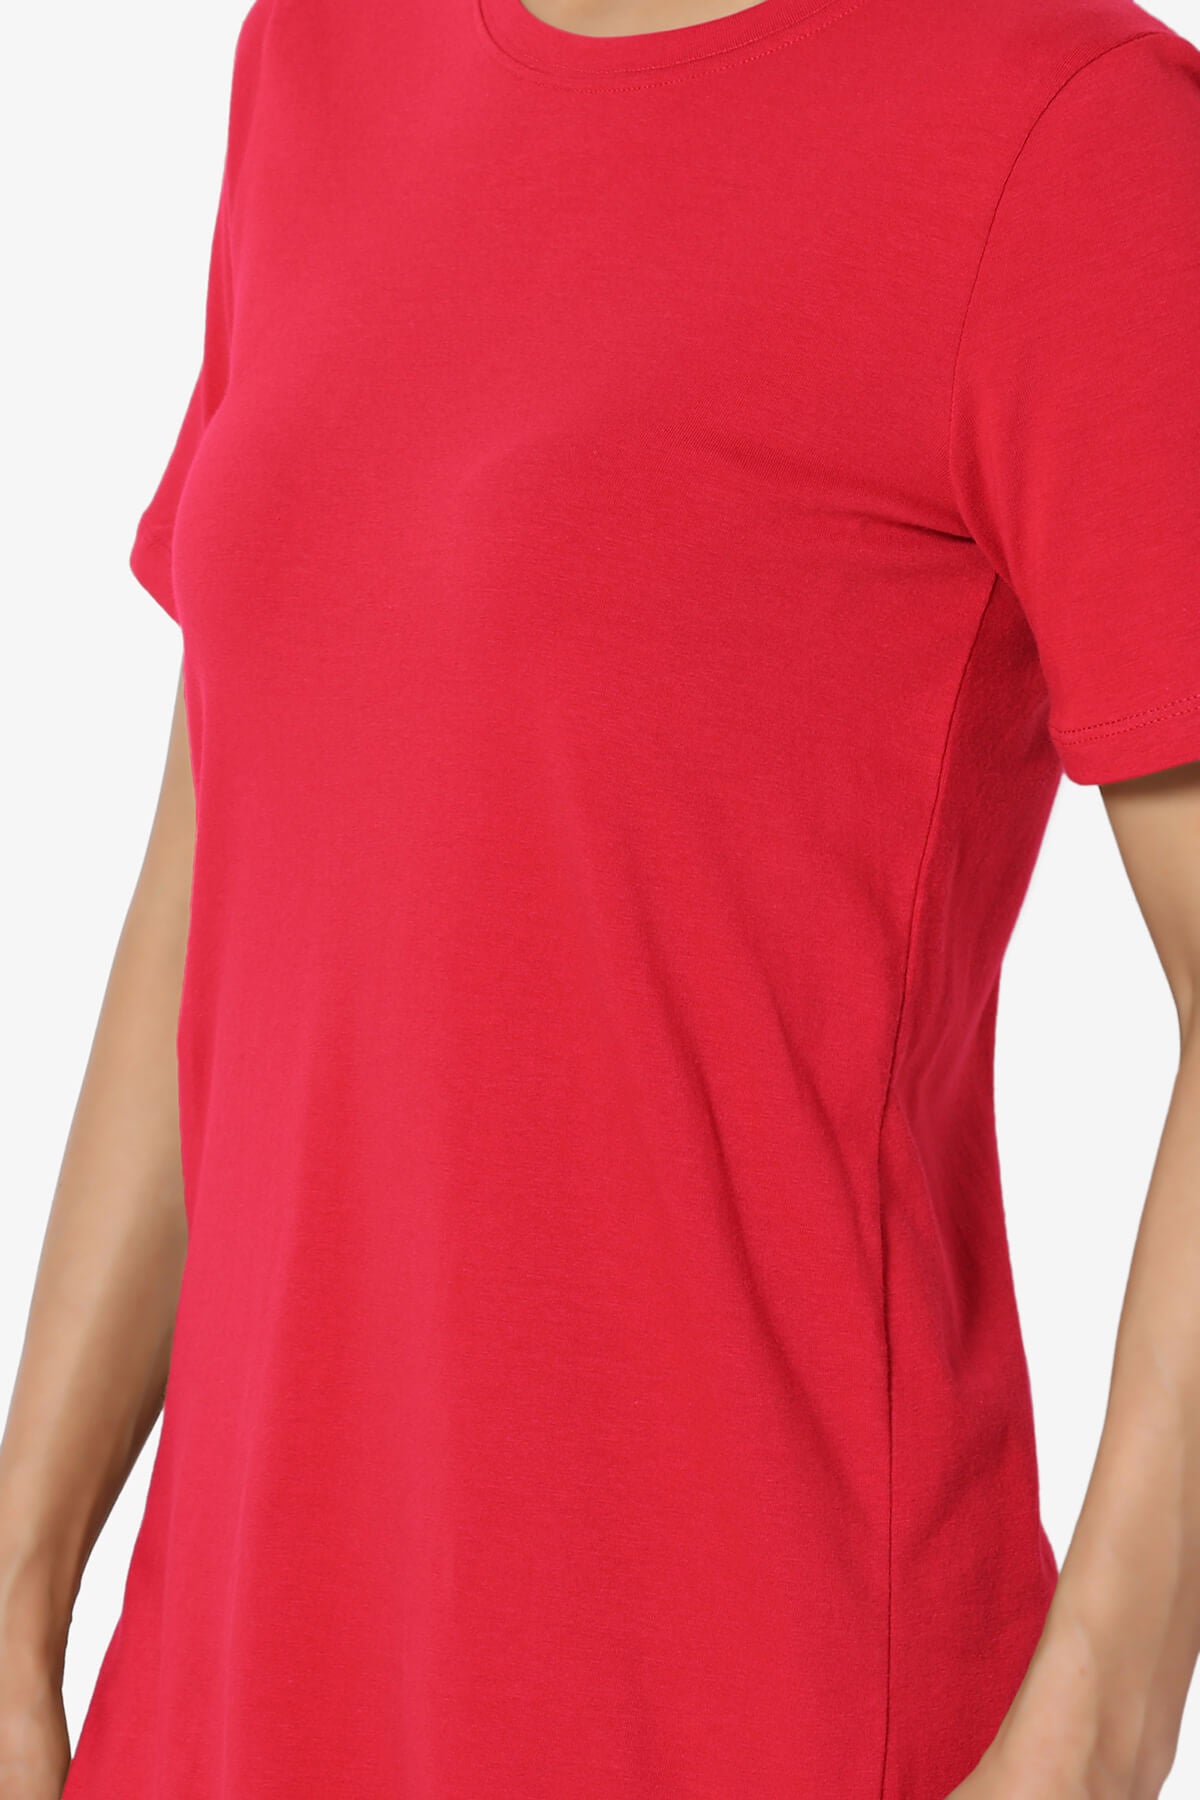 Elora Crew Neck Short Sleeve T-Shirt RED_5